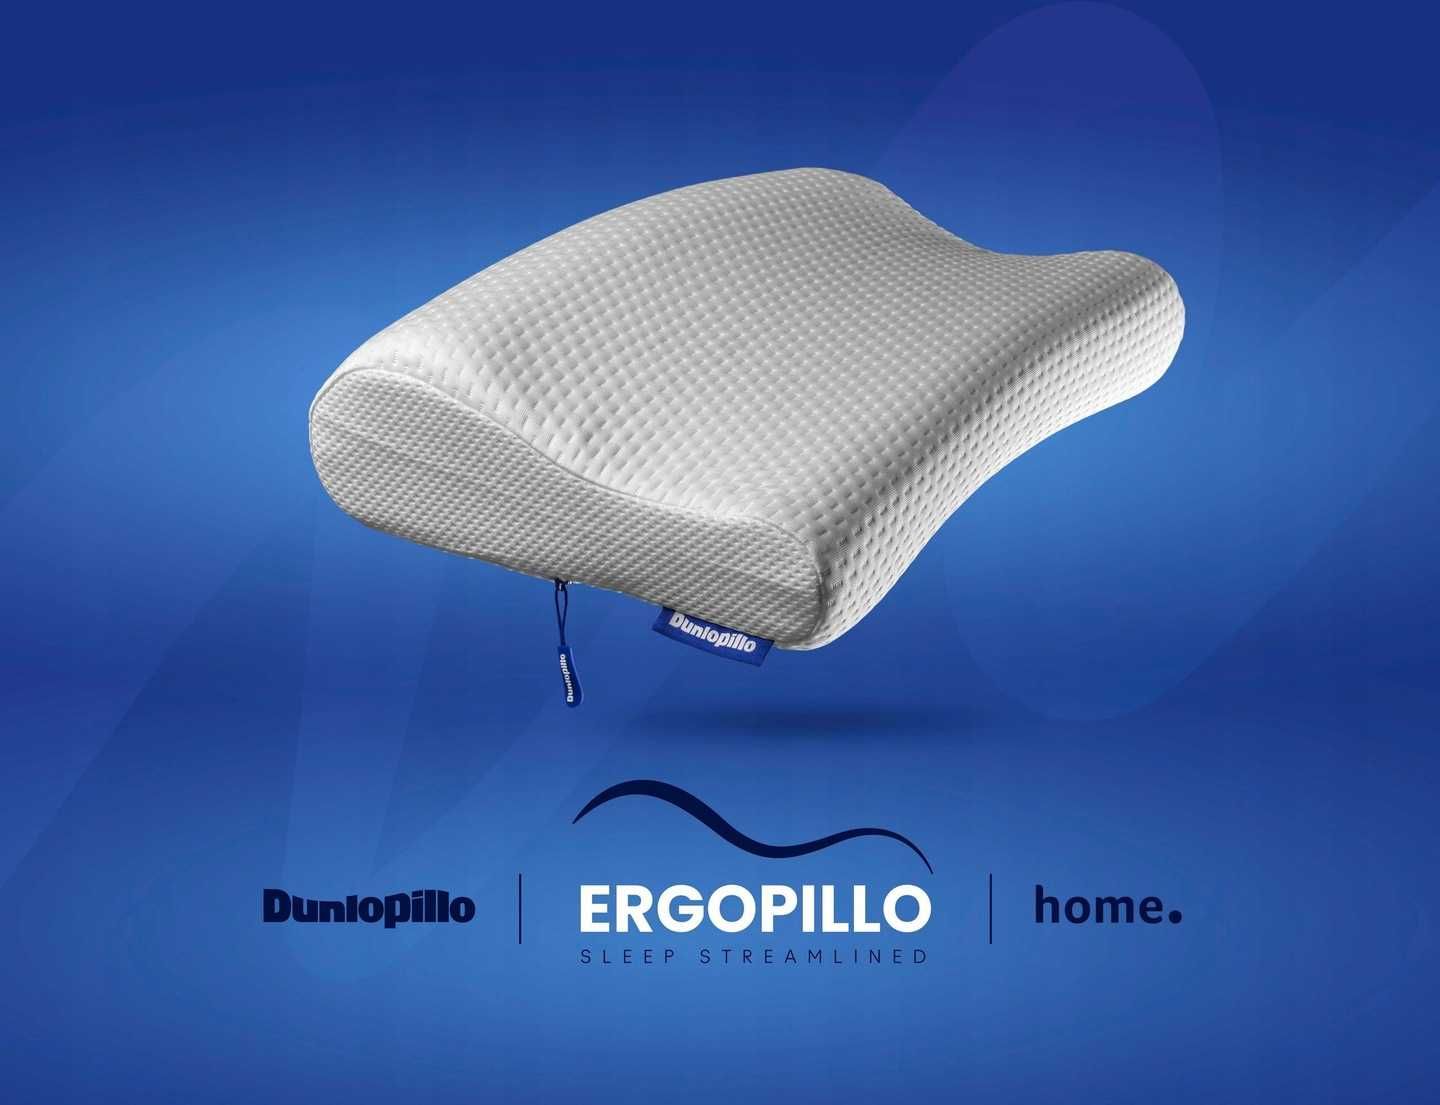 Nowa poduszka ergonomiczna profilowana - ortopedyczna Dunlopillo